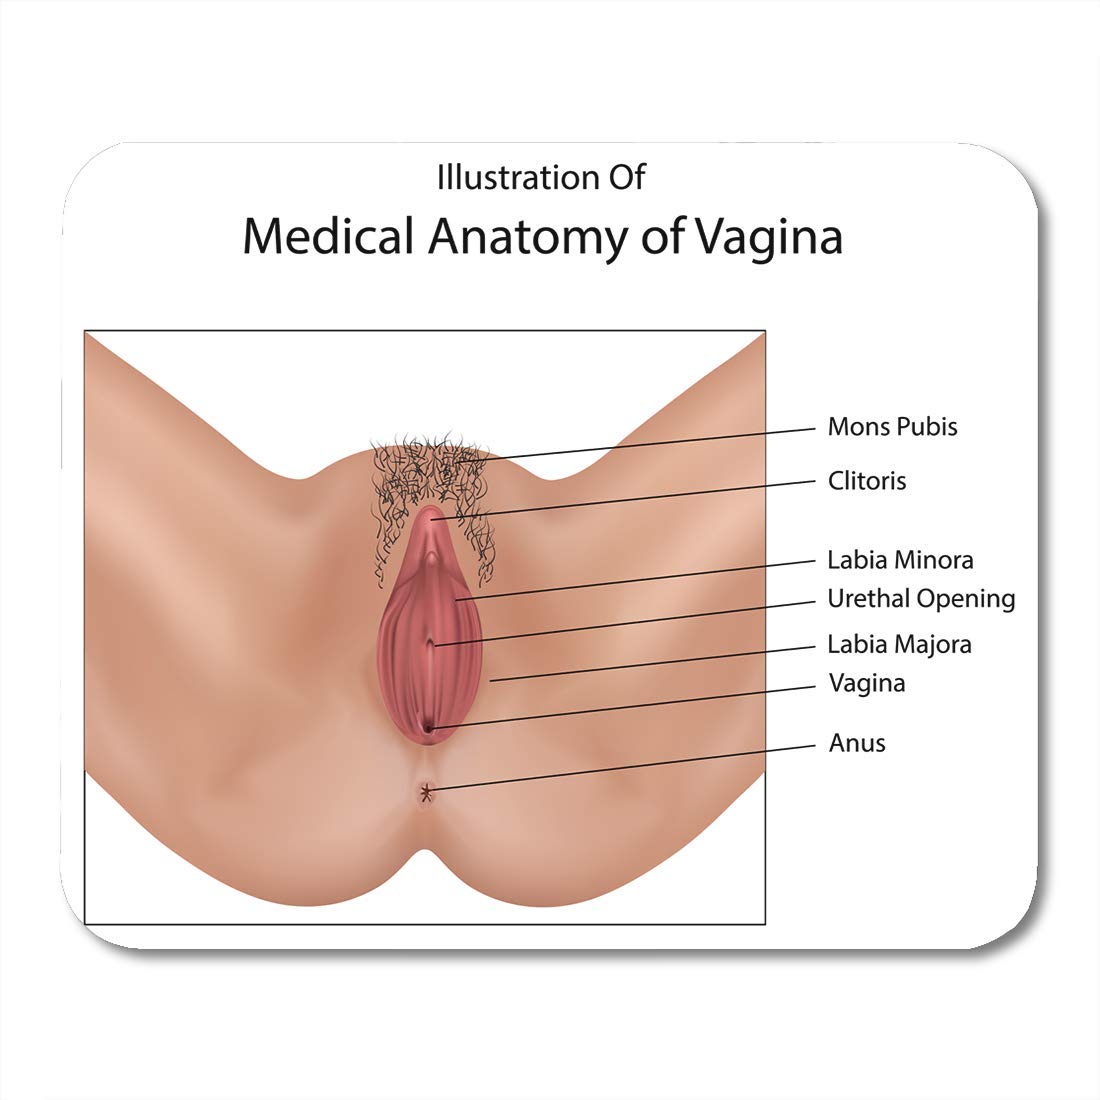 donabel ybanez recommends Woman Vagina Pics